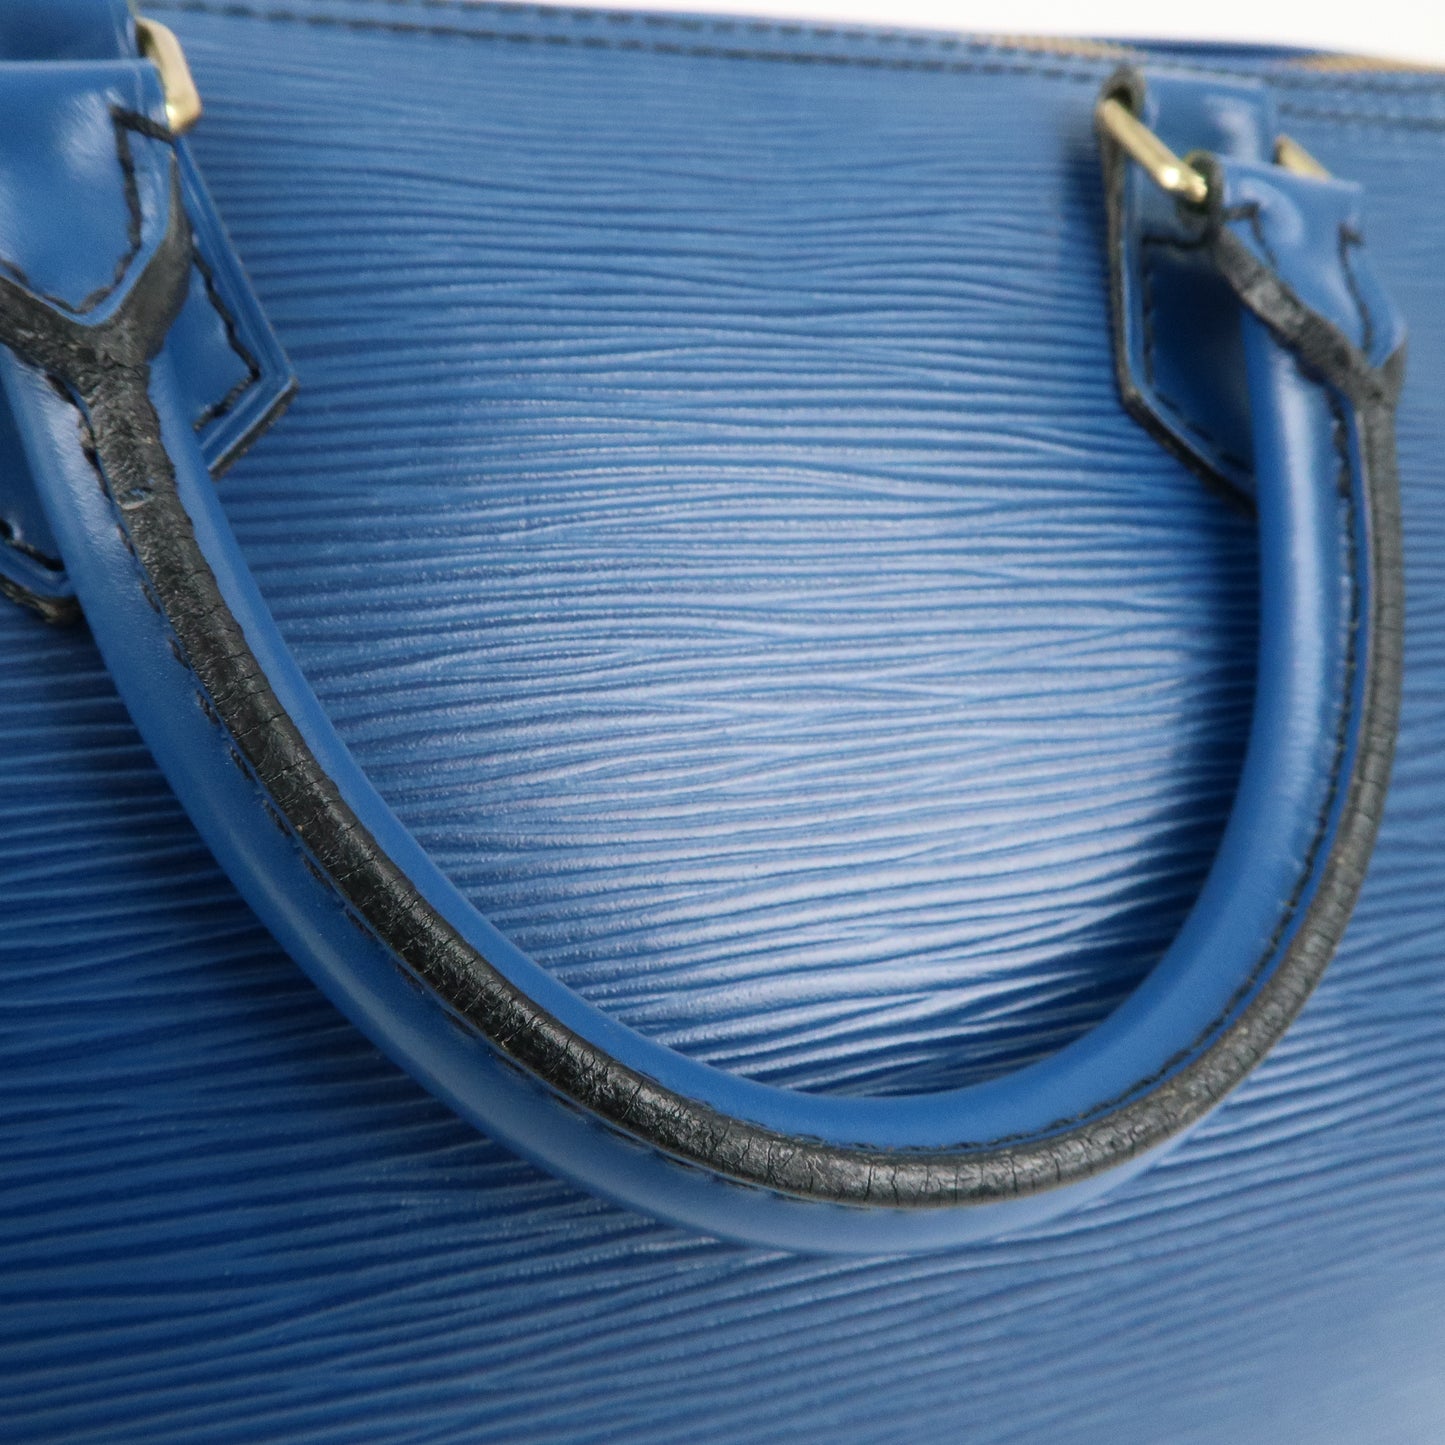 Louis Vuitton Epi Speedy 30 Hand Boston Bag Toledo Blue M43005